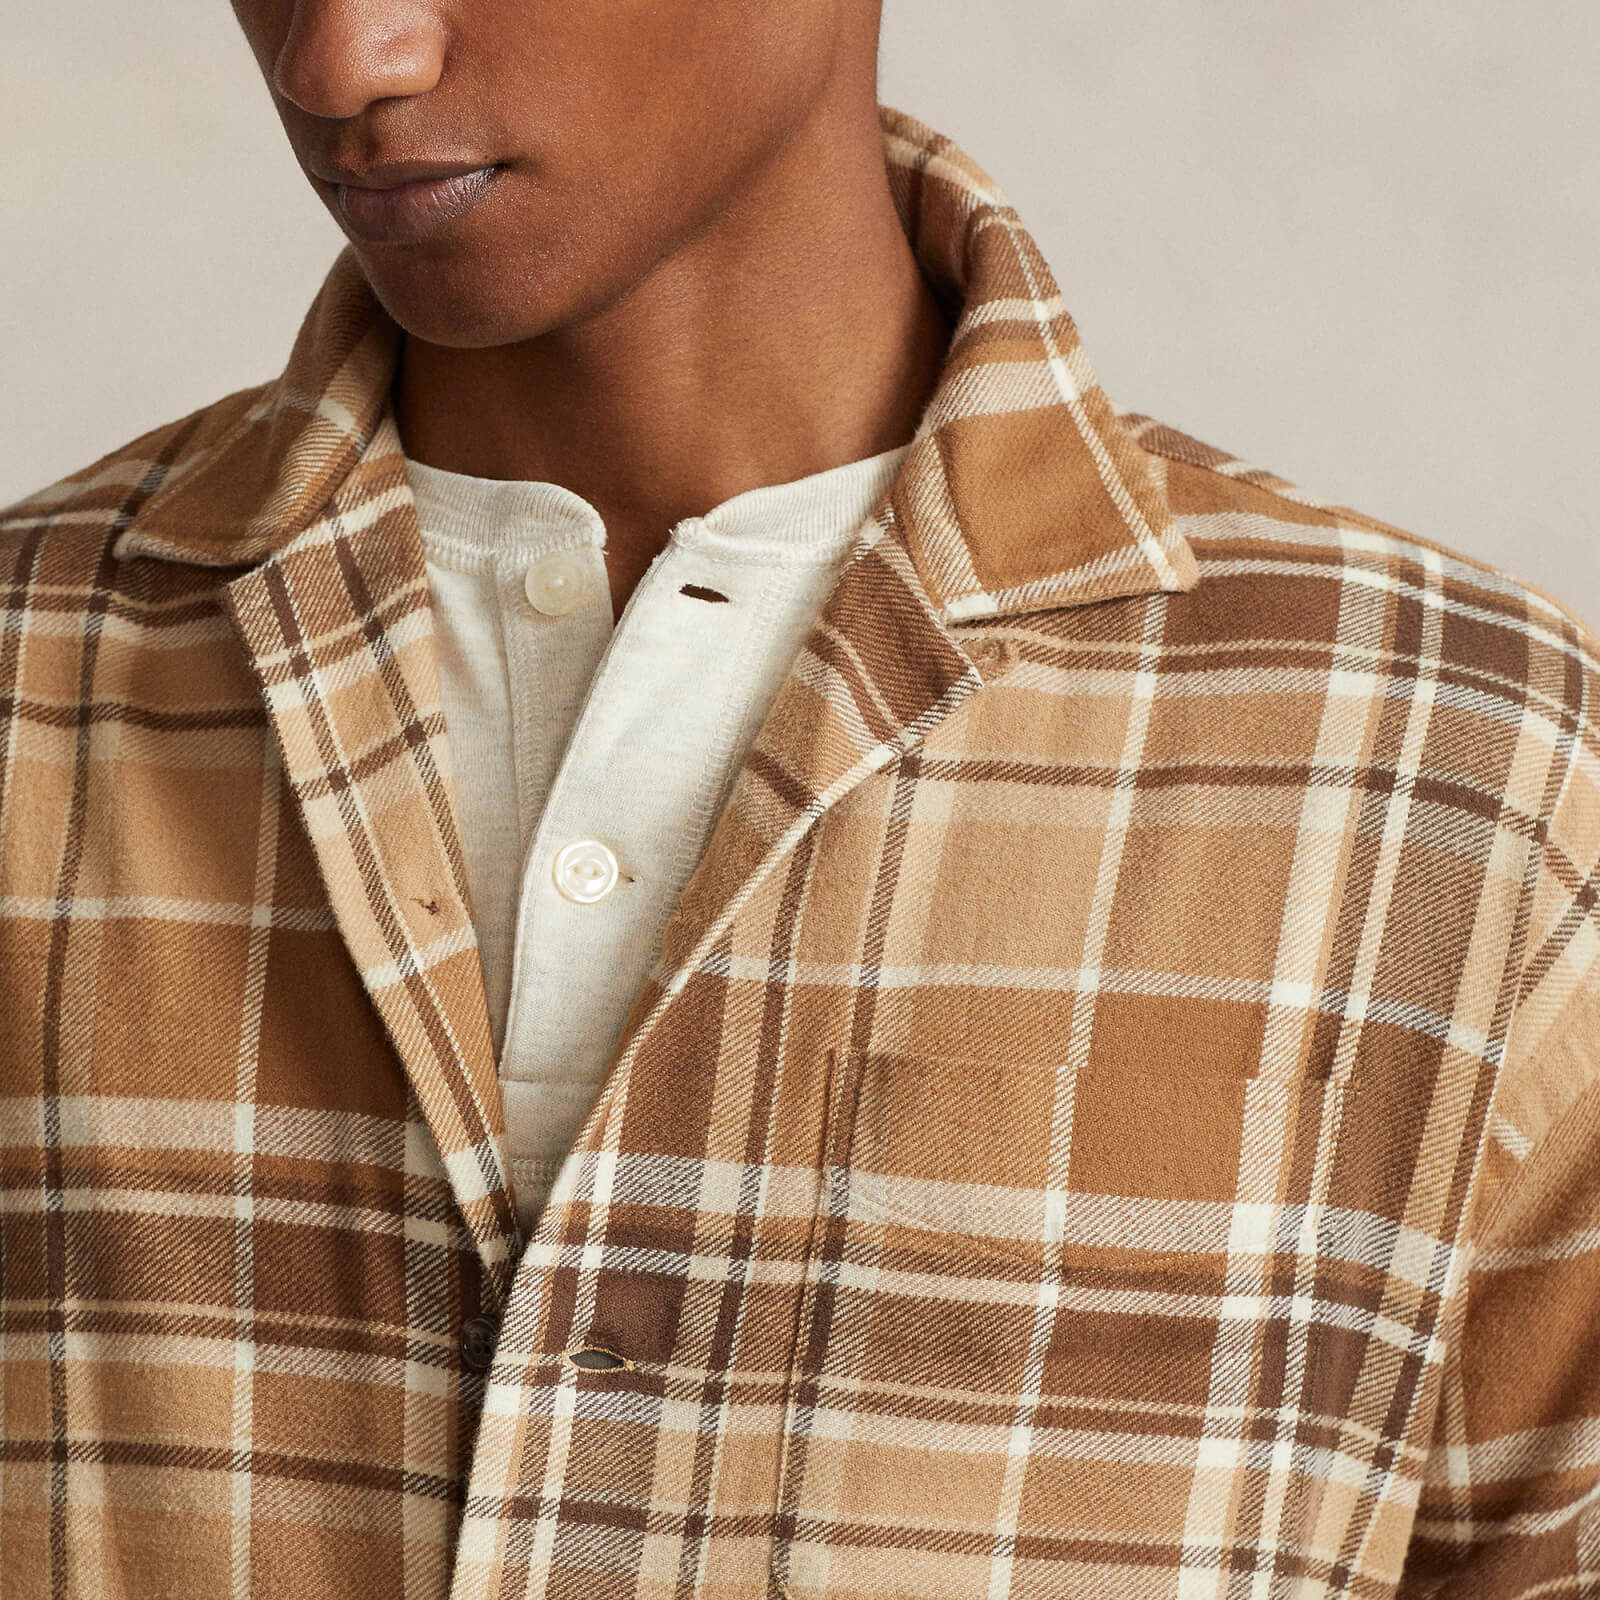 polo ralph lauren men's brushed flannel long sleeved shirt - khaki/brown multi - s